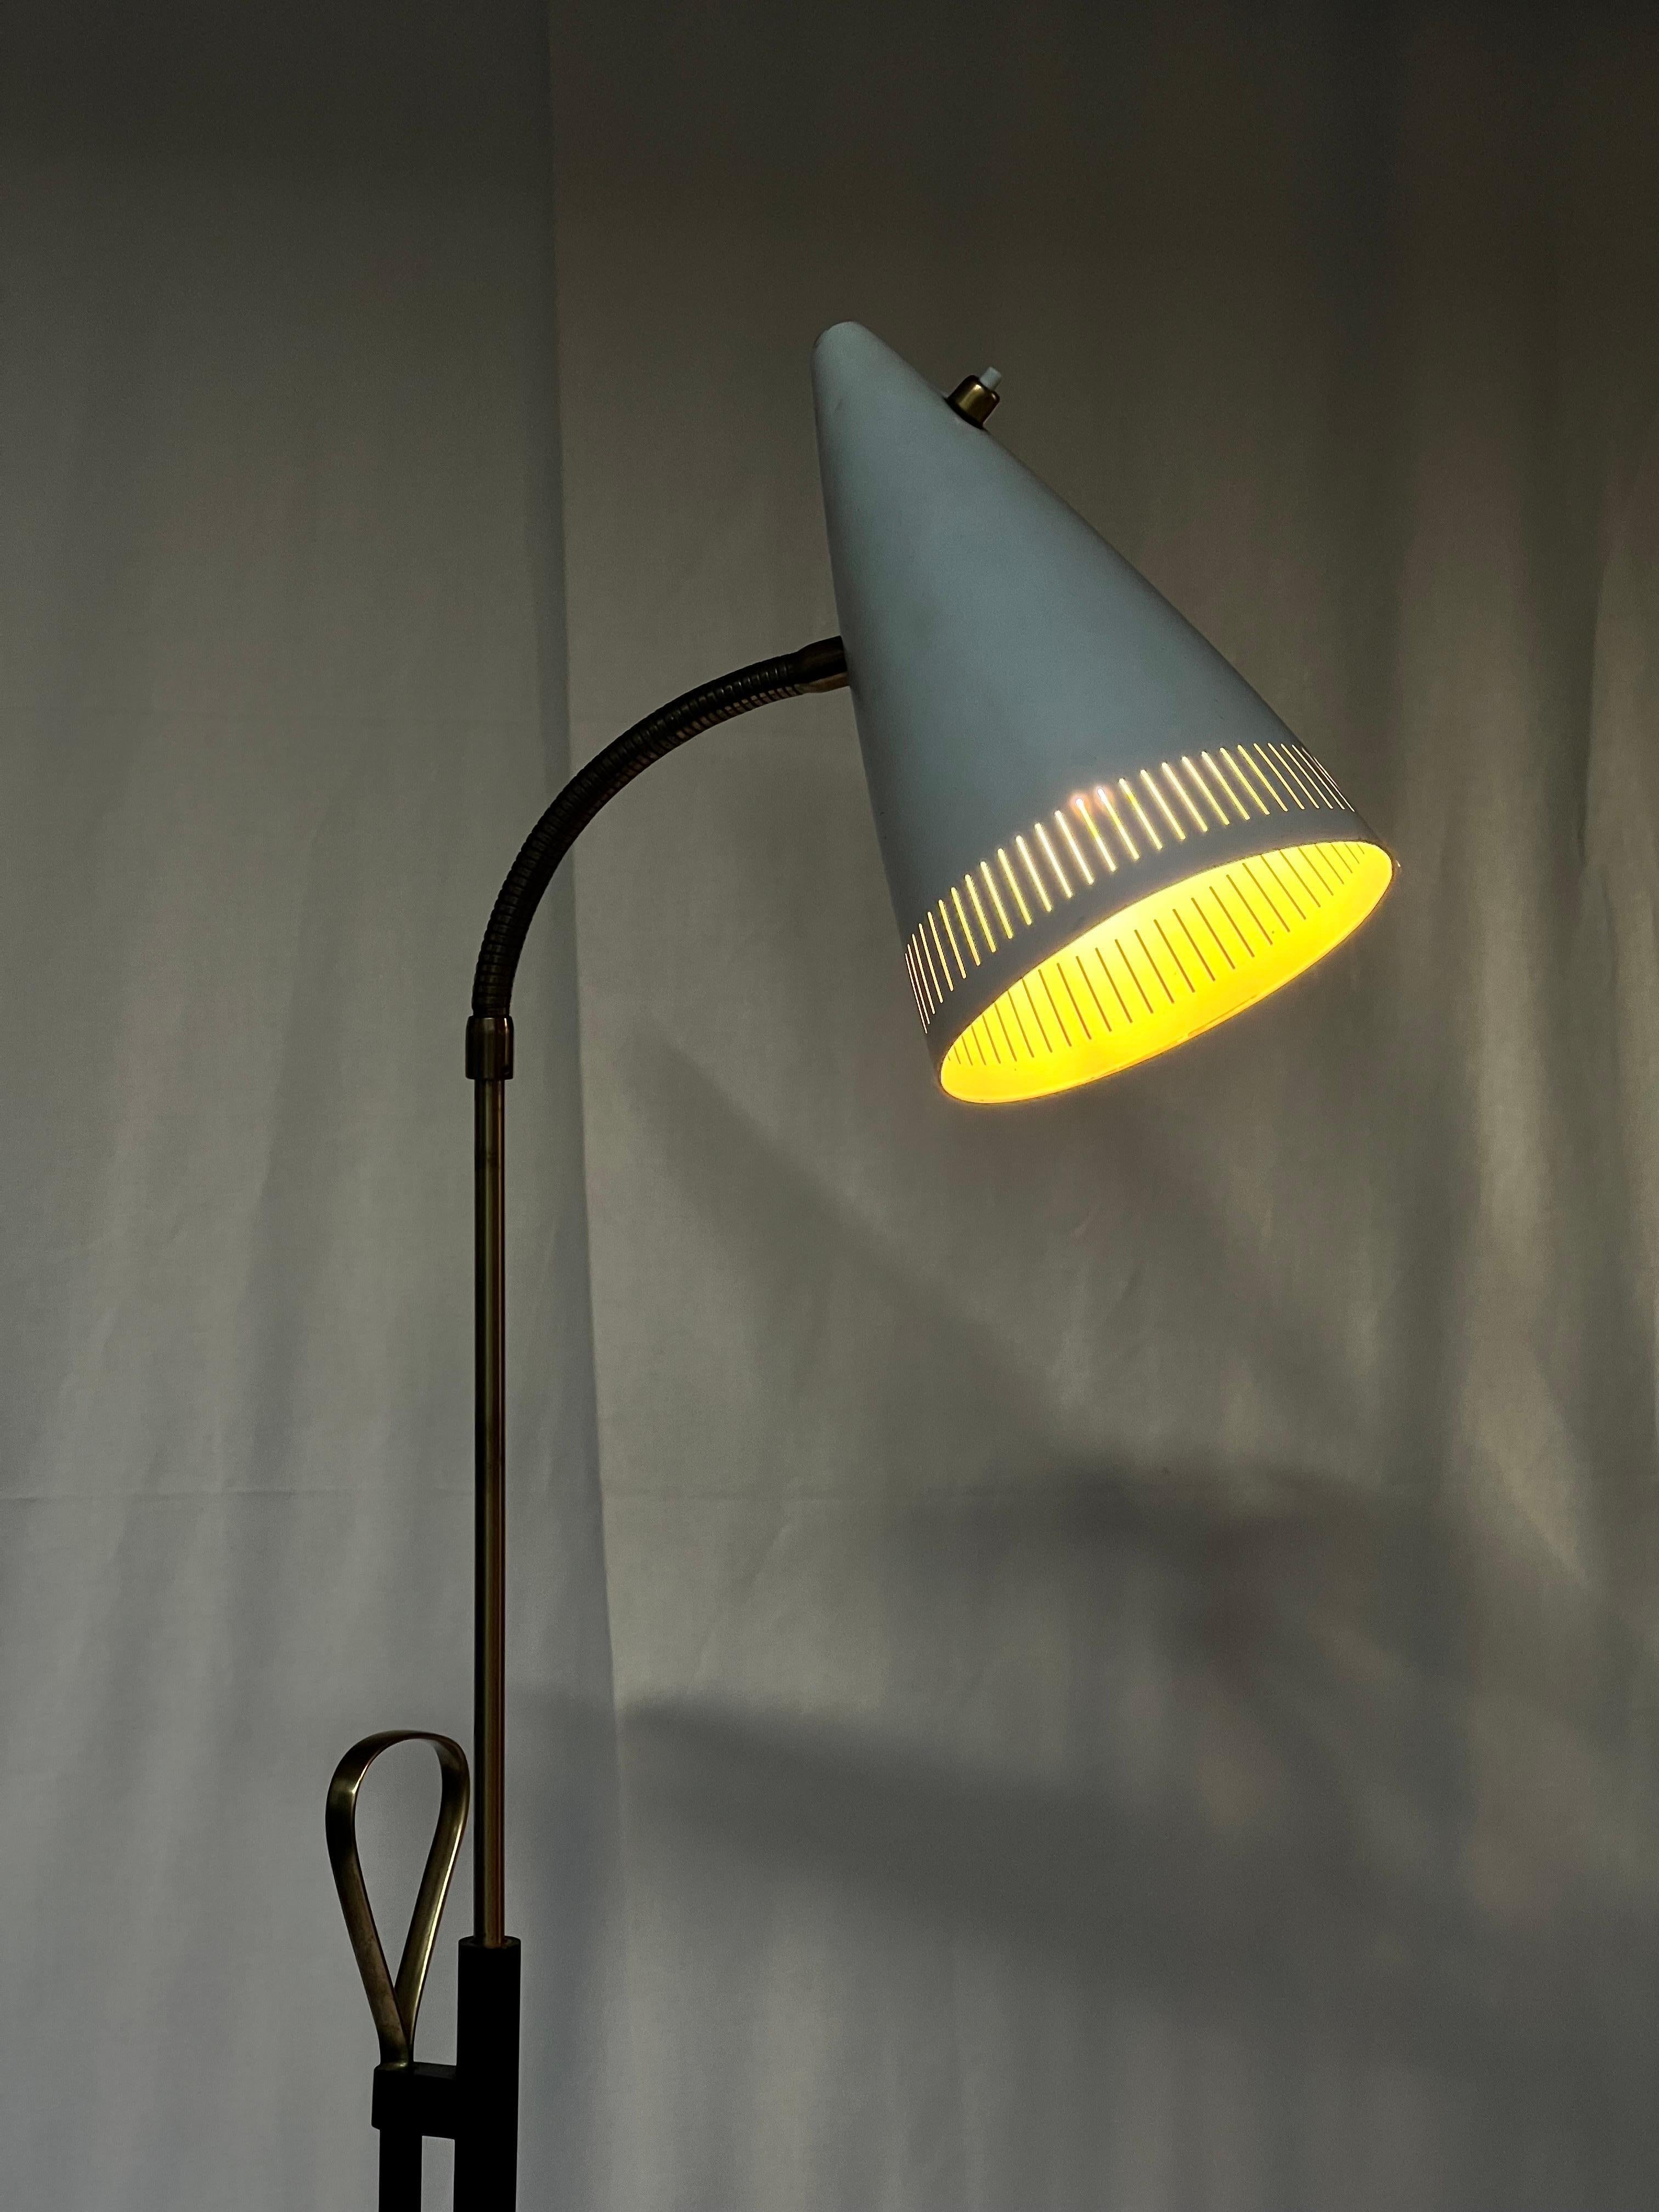 Falkenberg Stehlampe aus Messing, verstellbar in Höhe, Schweden 1960er Jahre (Moderne der Mitte des Jahrhunderts)